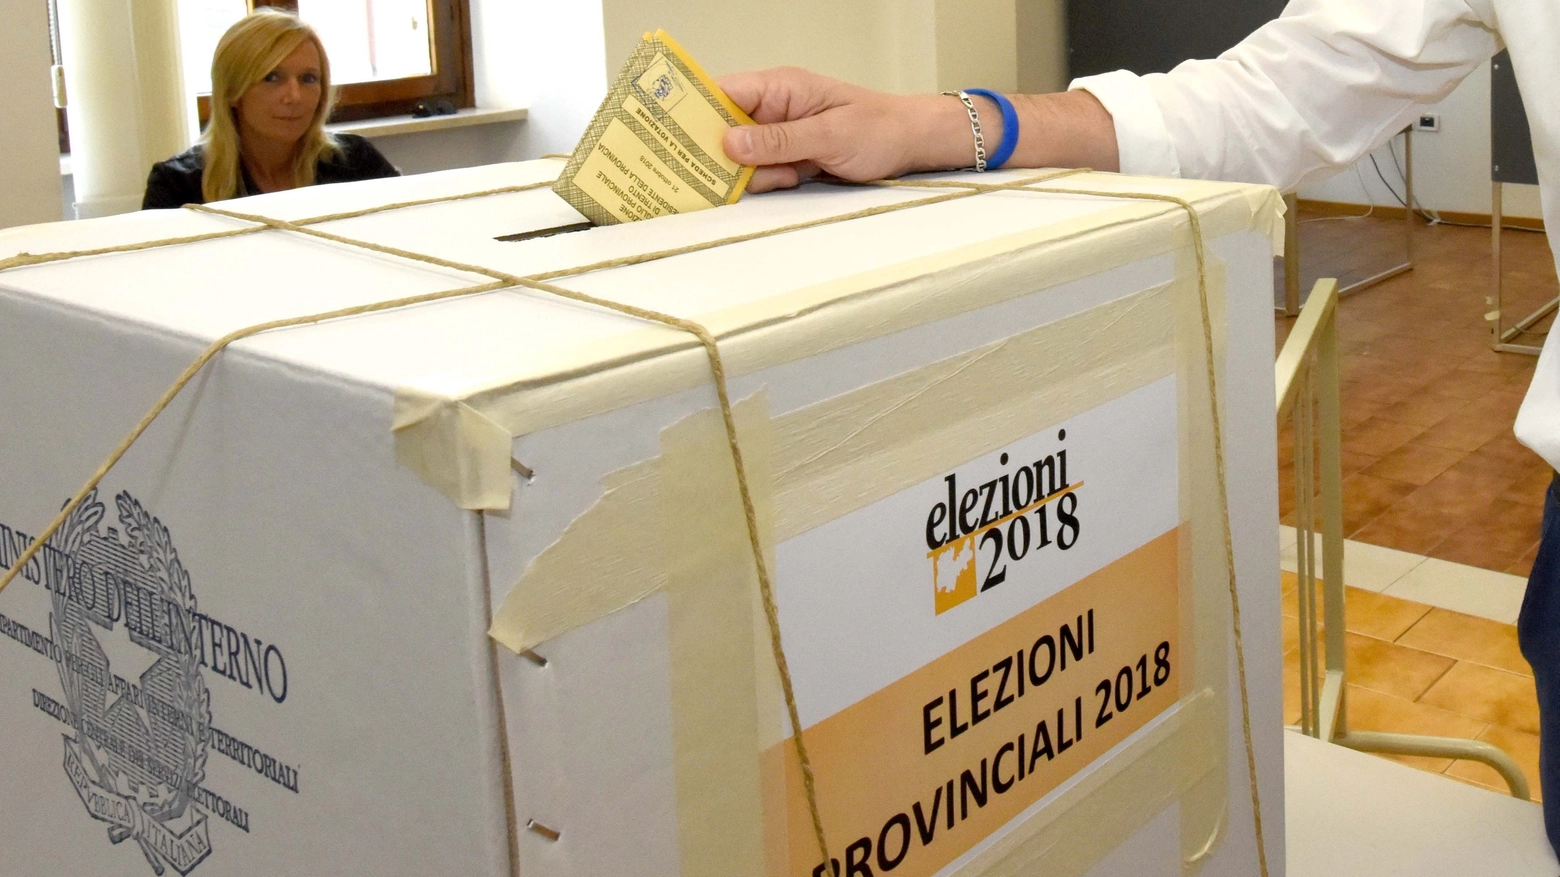 Elezioni provinciali 2018 (Foto LaPresse)